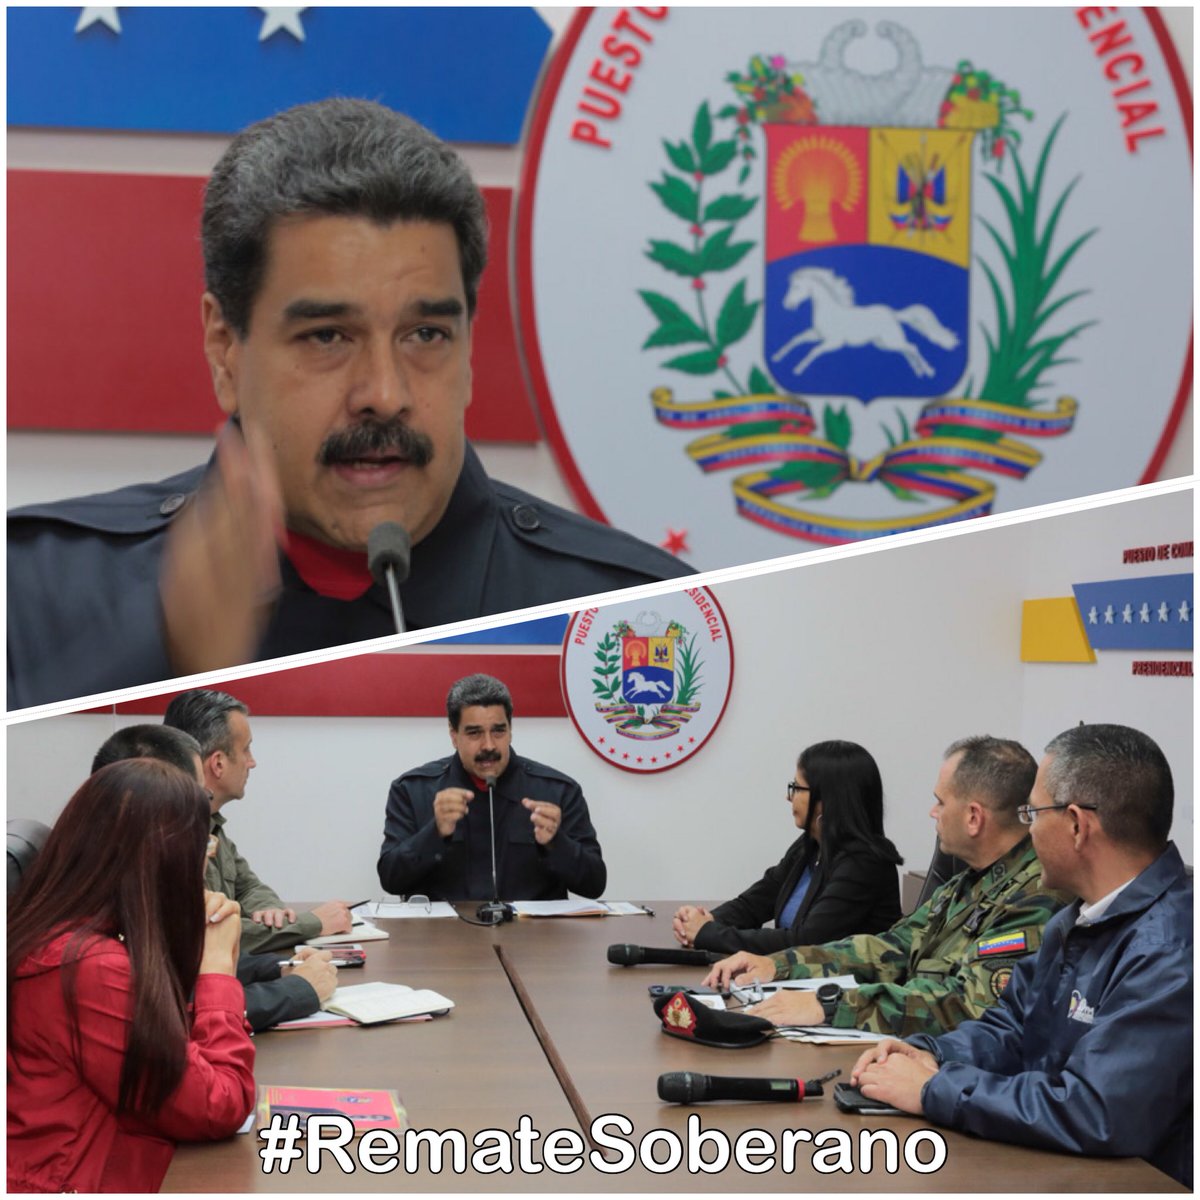 Pdte @NicolasMaduro: “Los venezolanos estamos demostrando al mundo que vivimos en una democracia plena” #RemateSoberano